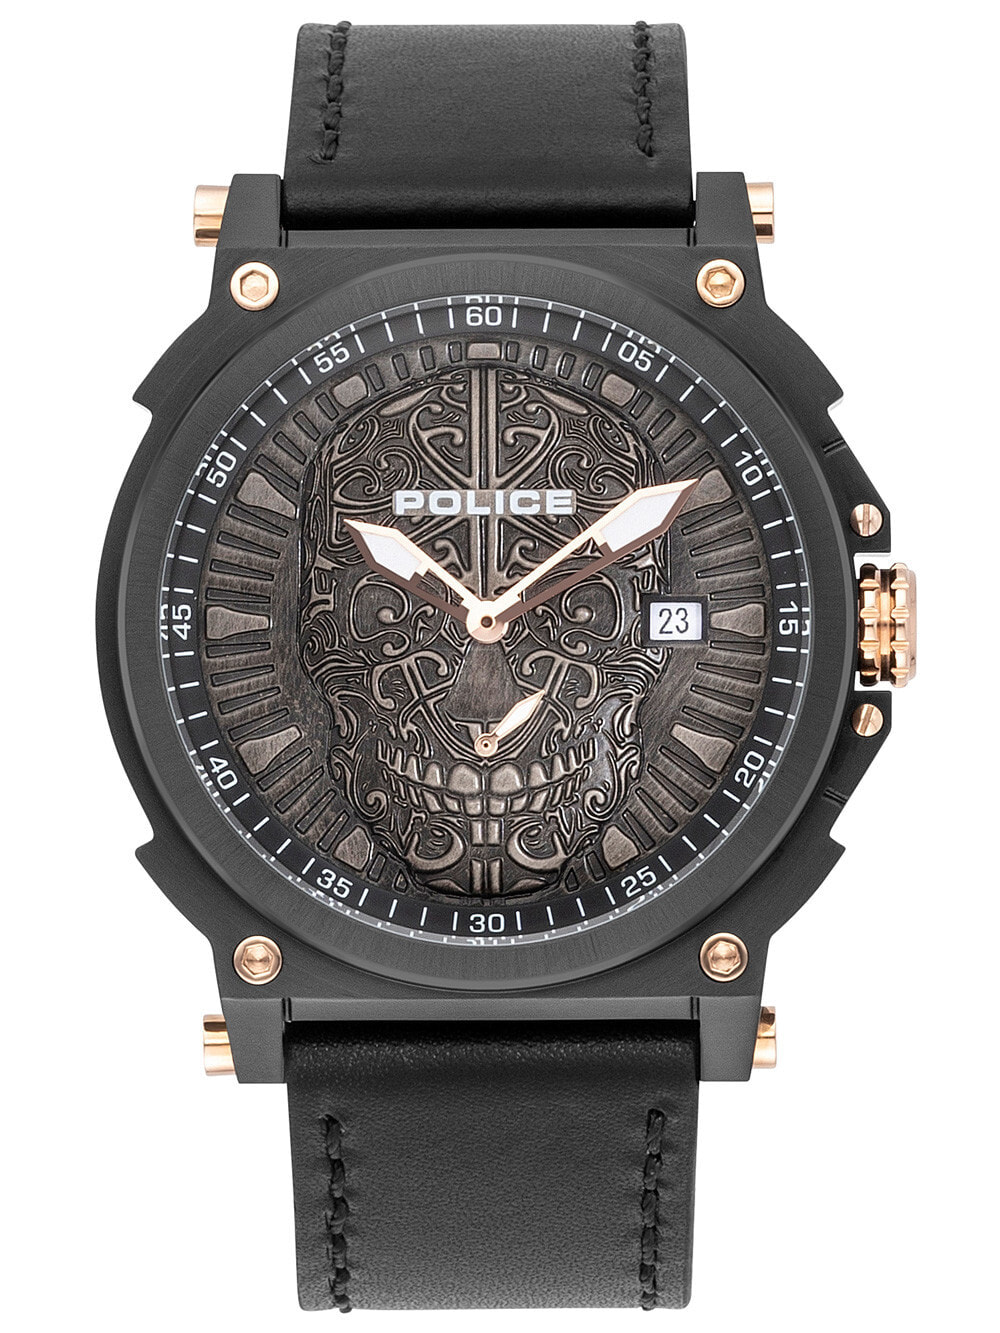 Мужские наручные часы с черным кожаным ремешком Police PL15728JSB.02 Compass Mens 48mm 3ATM